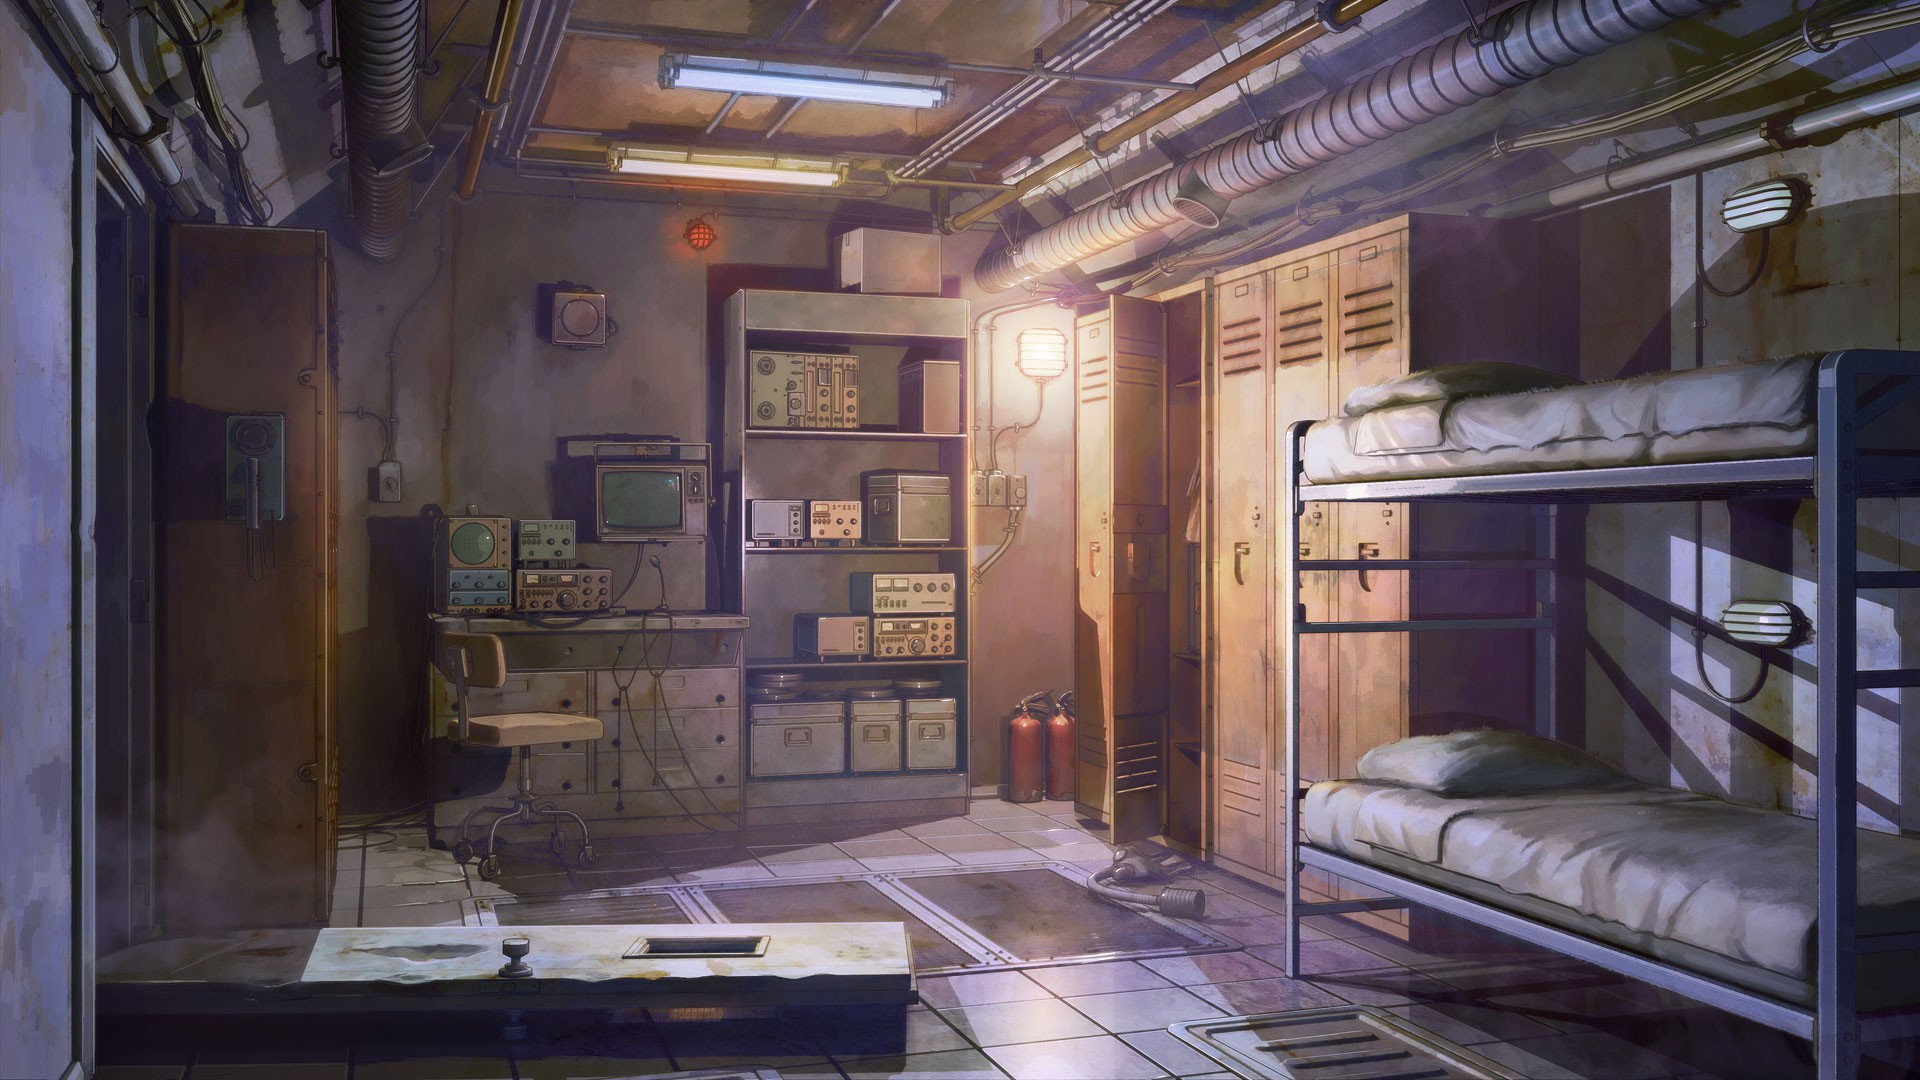 General 1920x1080 bed door lockers tiles Everlasting Summer (visual novel) vents indoors